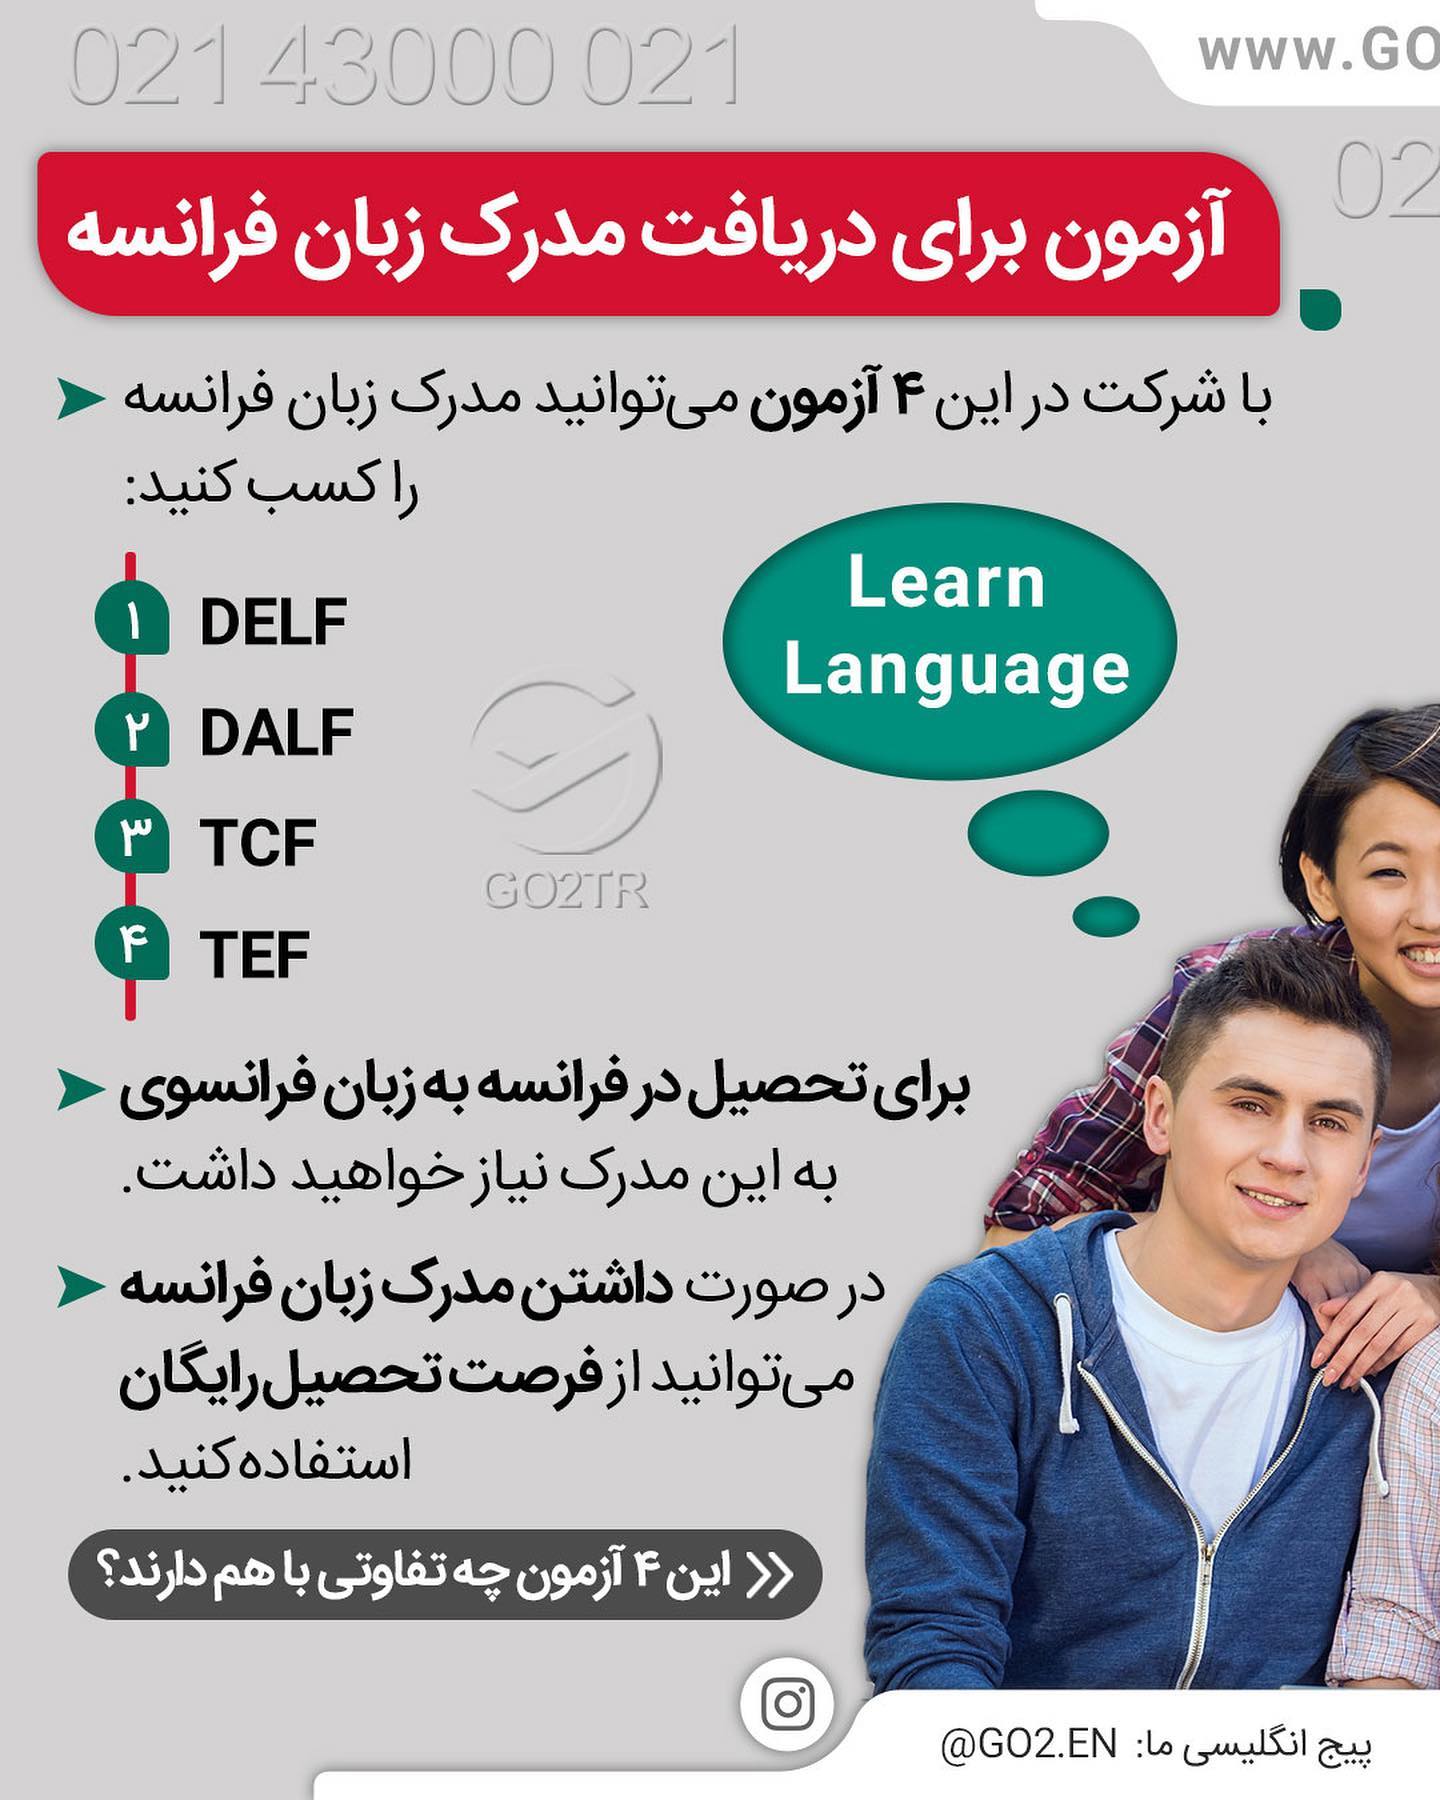 میخوای به چه زبانی در خارج تحصیل کنی؟ 📚 . • ✔️متقاضیان تحصیل به زبان انگلیس